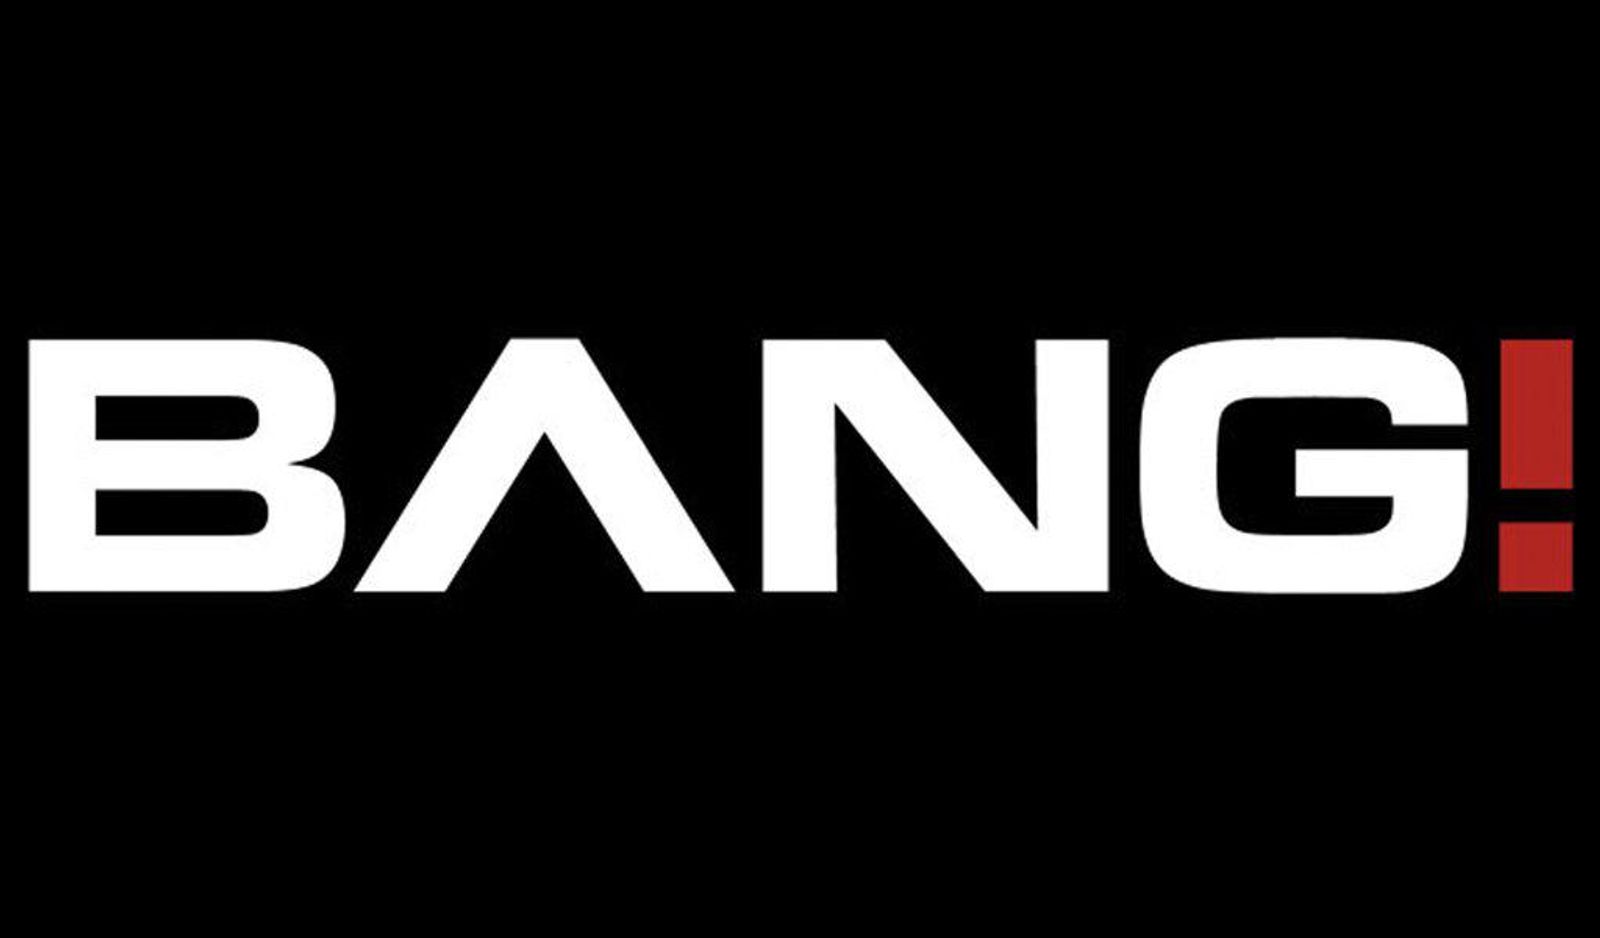 Bang.com Becomes Available on Roku